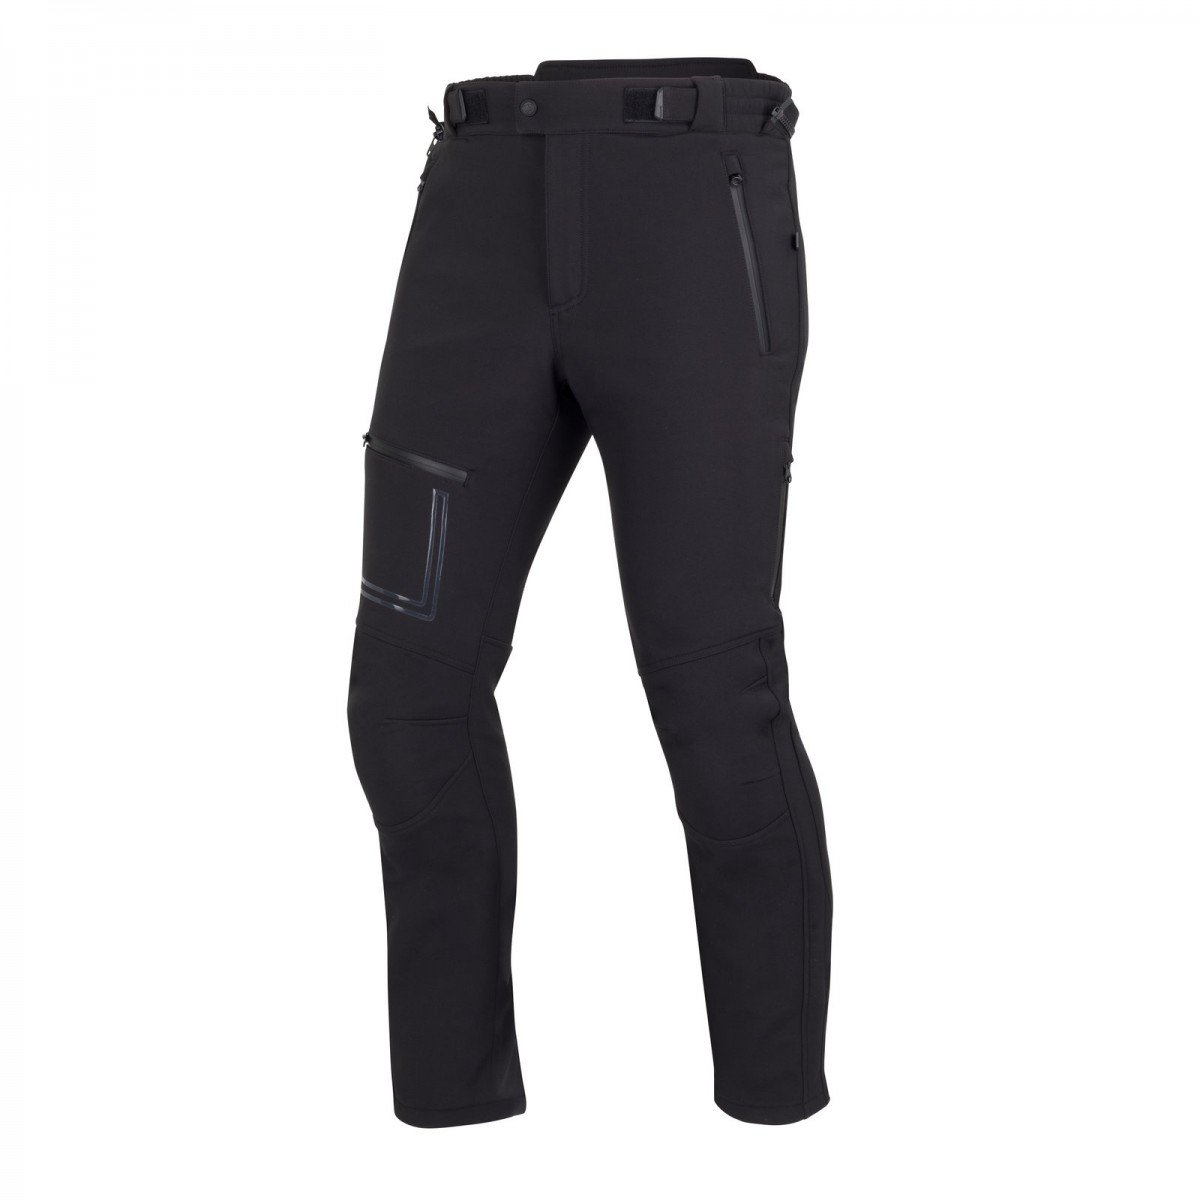 Image of Bering Alkor Trousers Black Size 2XL EN